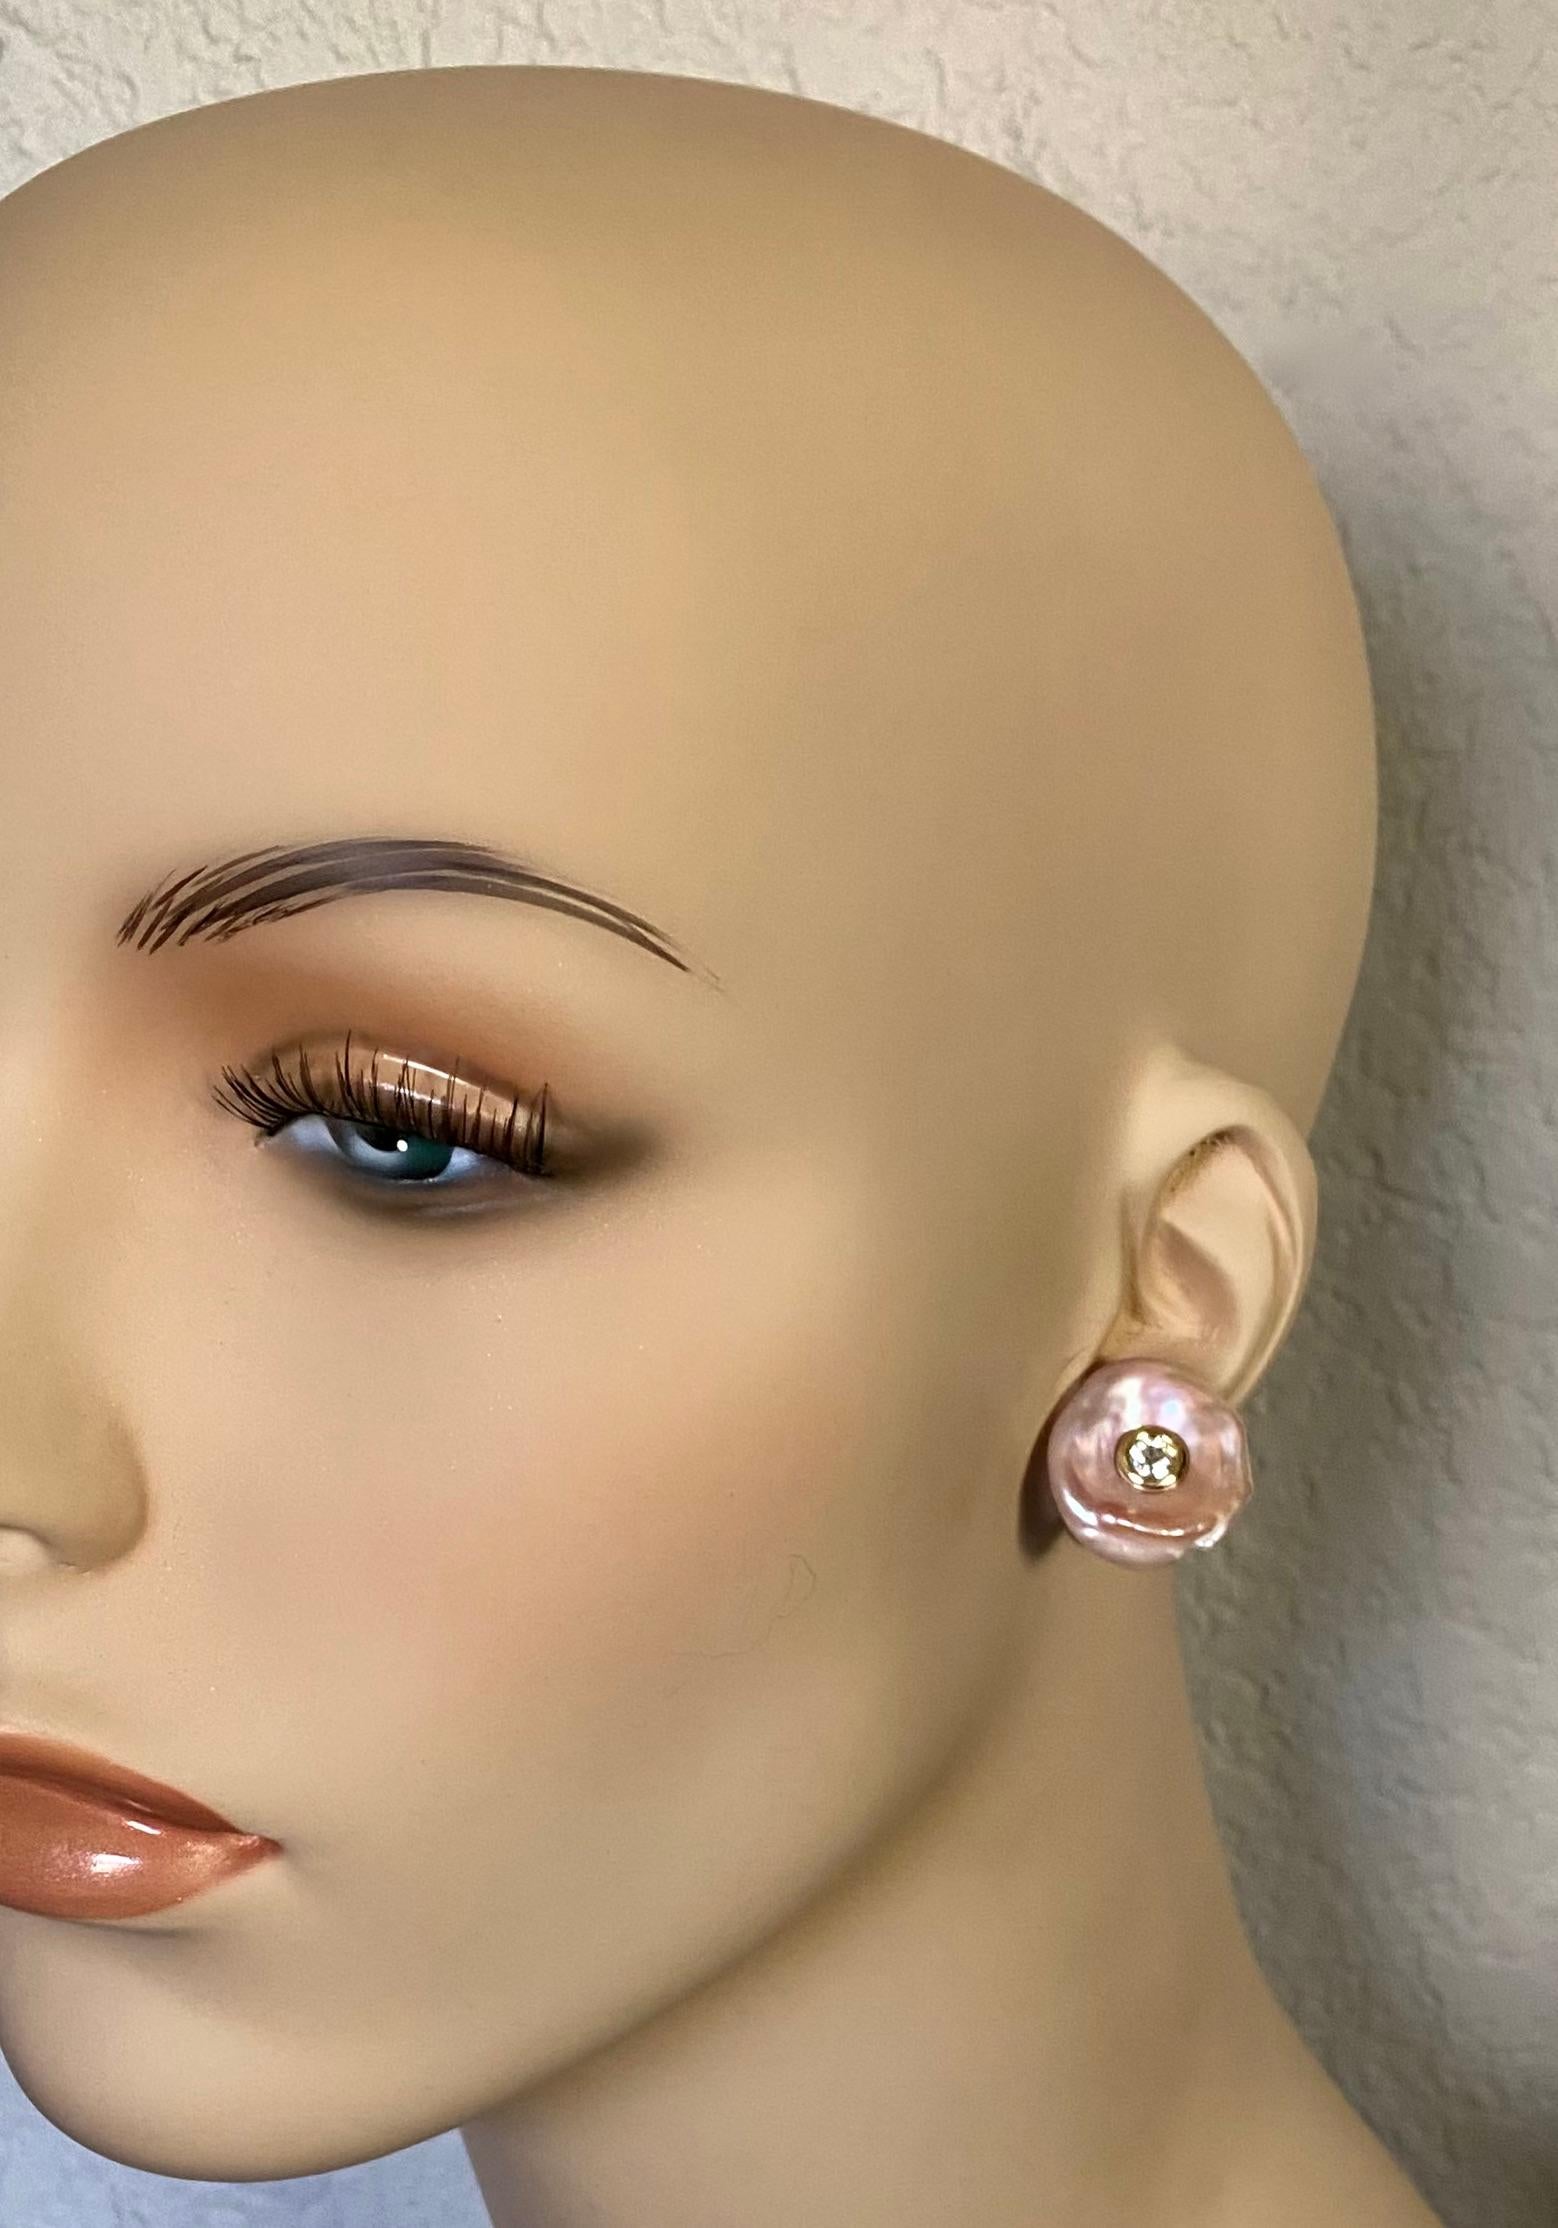 Barocke Perlen werden von Diamanten im europäischen Schliff in diesen anspruchsvollen Knopf-Ohrringen akzentuiert.  Die Perlen (Herkunft: Japan) sind rosafarben, spiegeln aber aufgrund ihres unglaublich schillernden Perlmutts ein